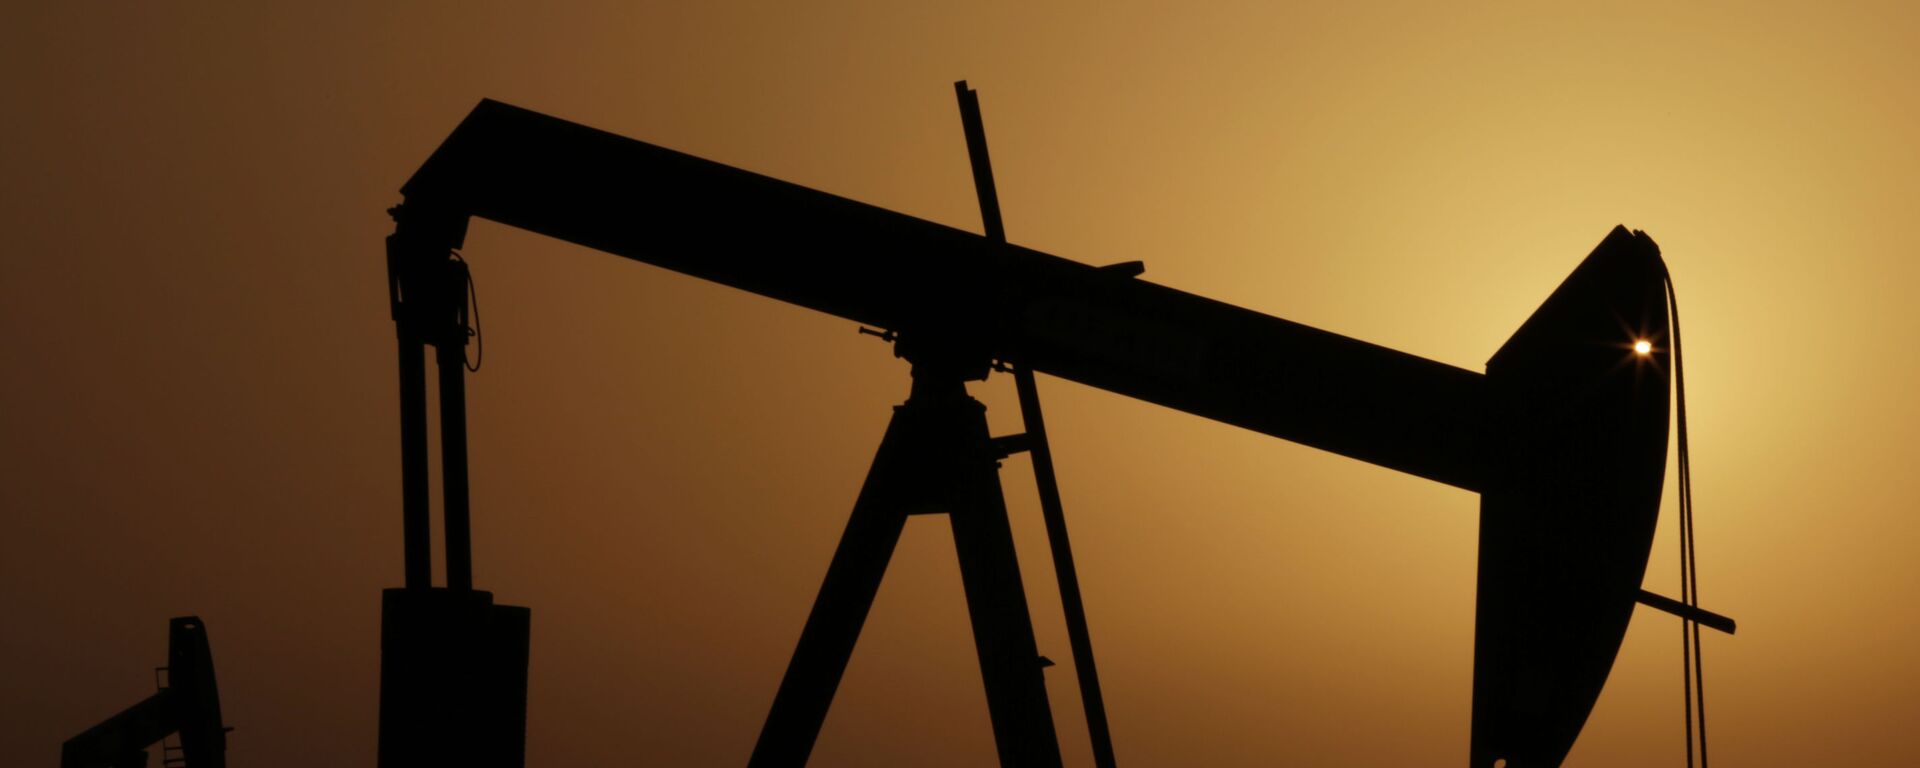 Нефтяные вышки в Персидском заливе в Бахрейне - Sputnik Қазақстан, 1920, 30.04.2021